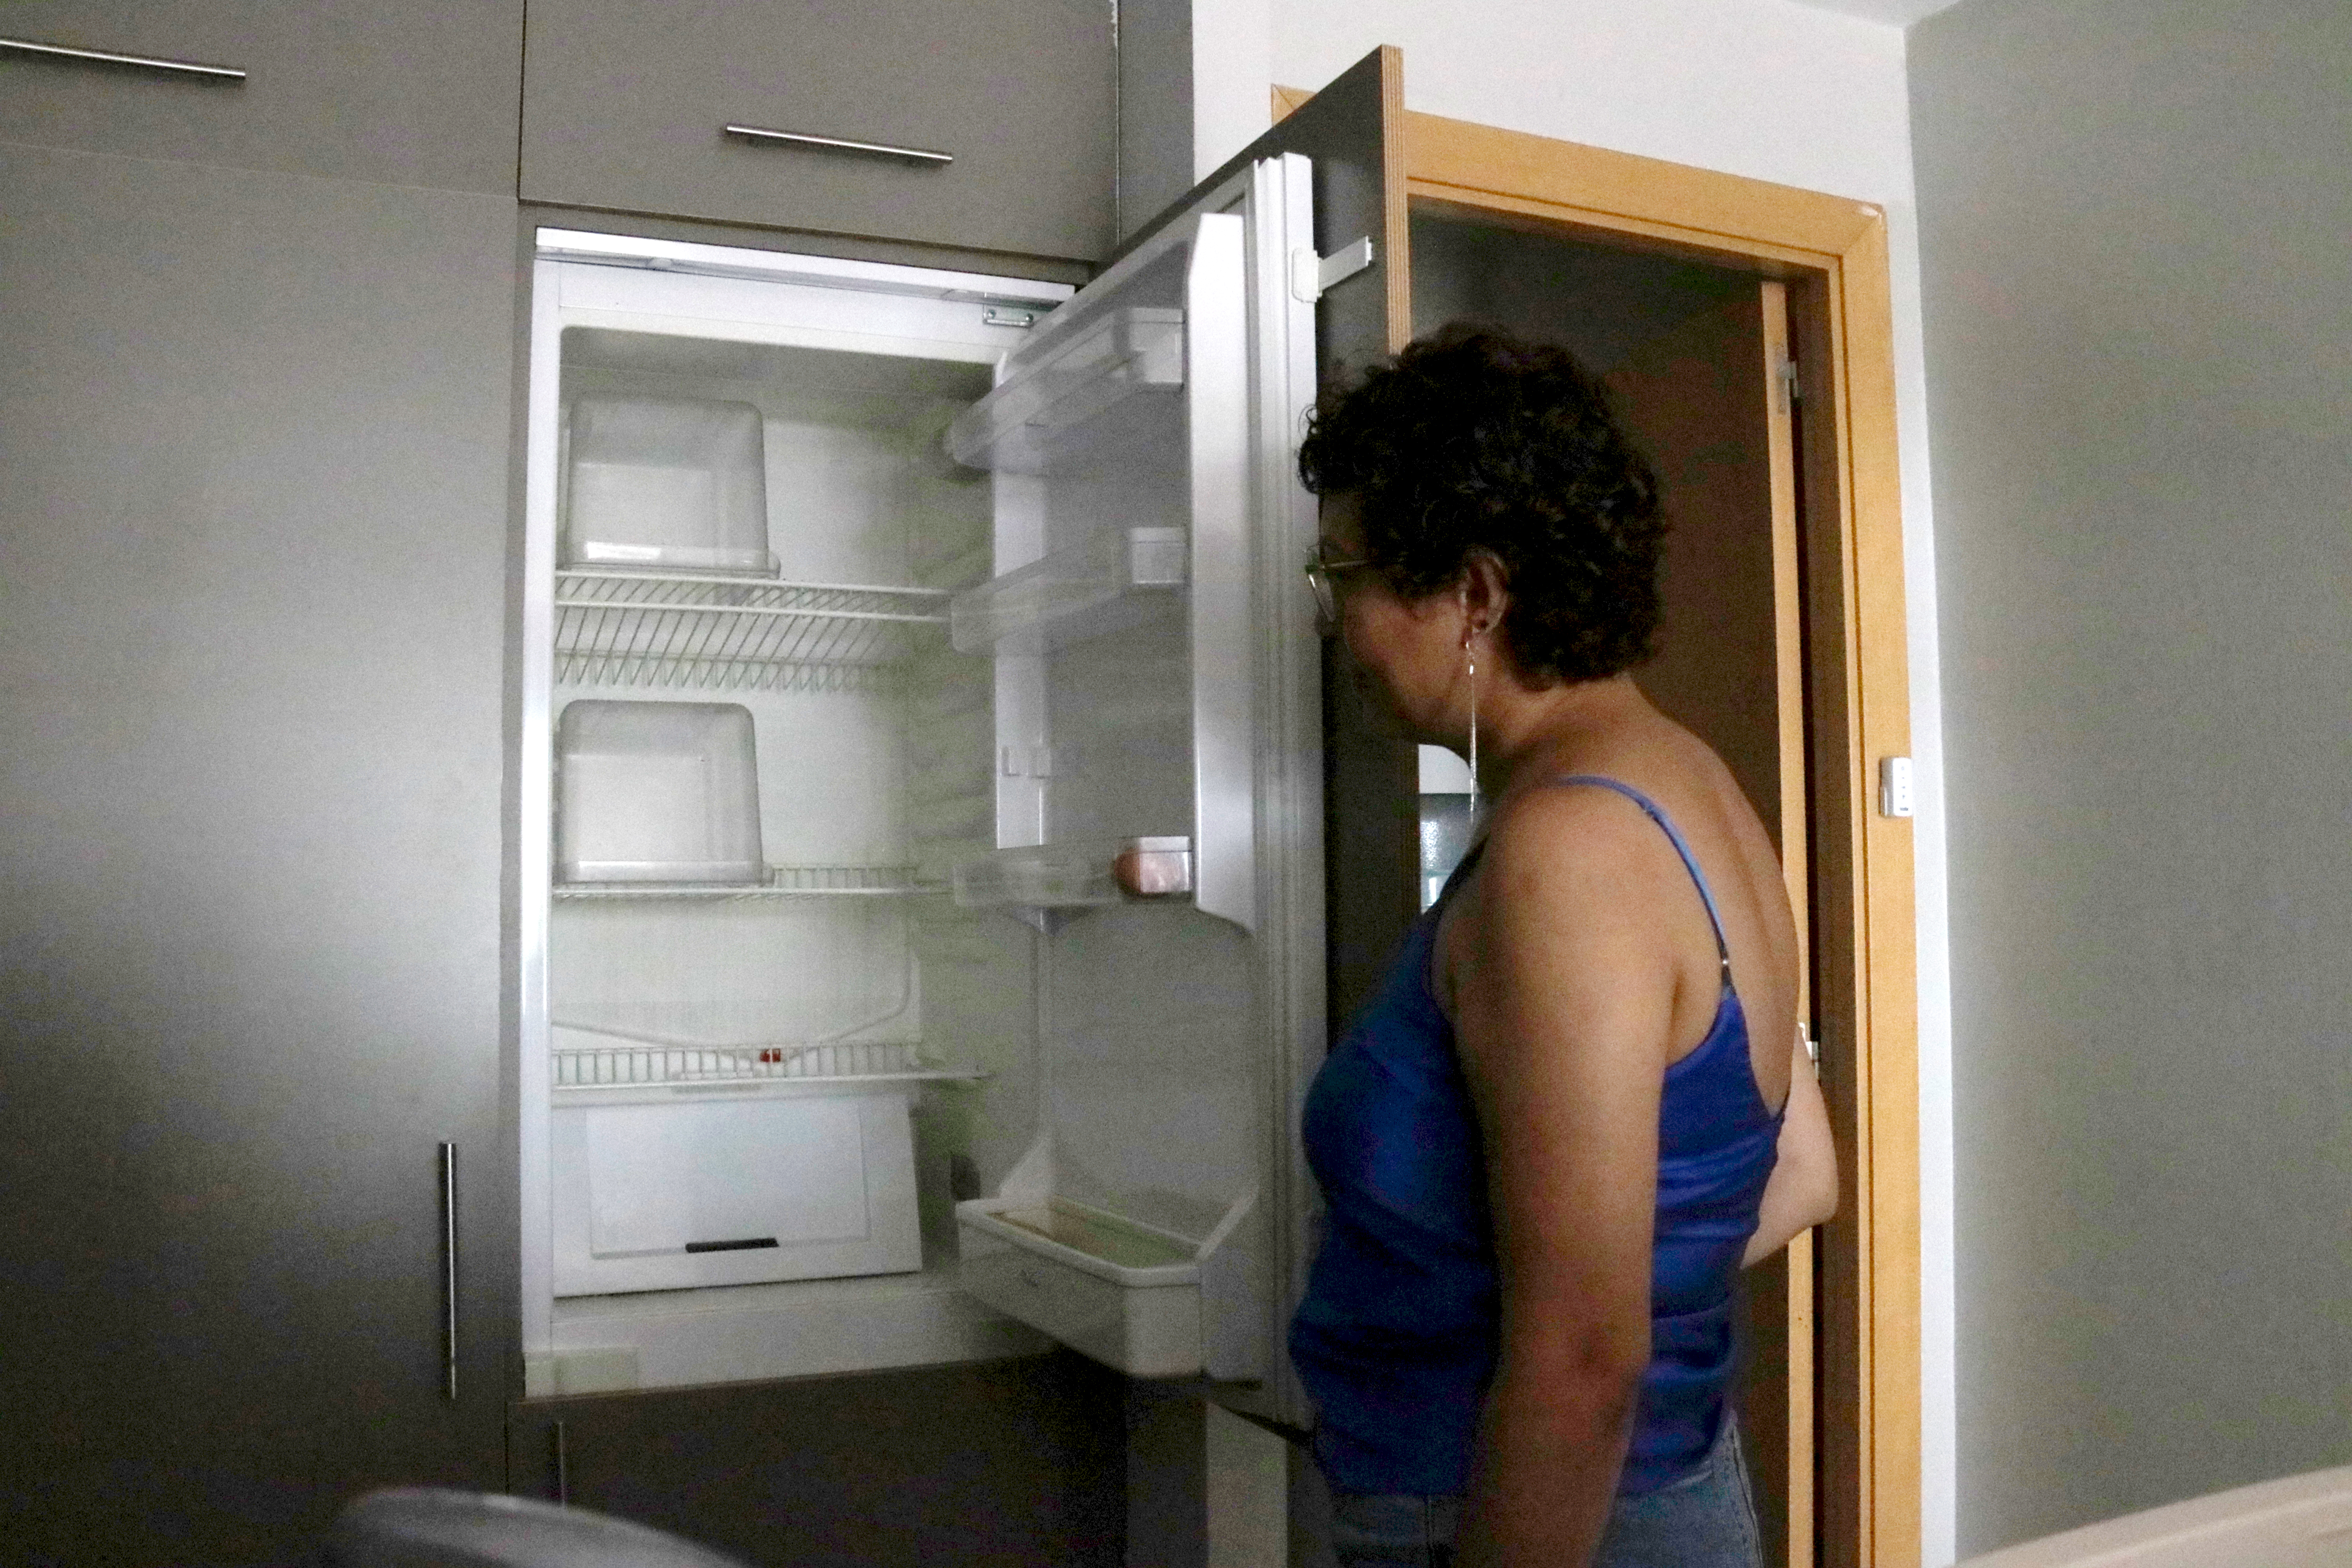 La vintena de famílies del bloc ocupat de Sabadell continuen sense llum gairebé un mes després